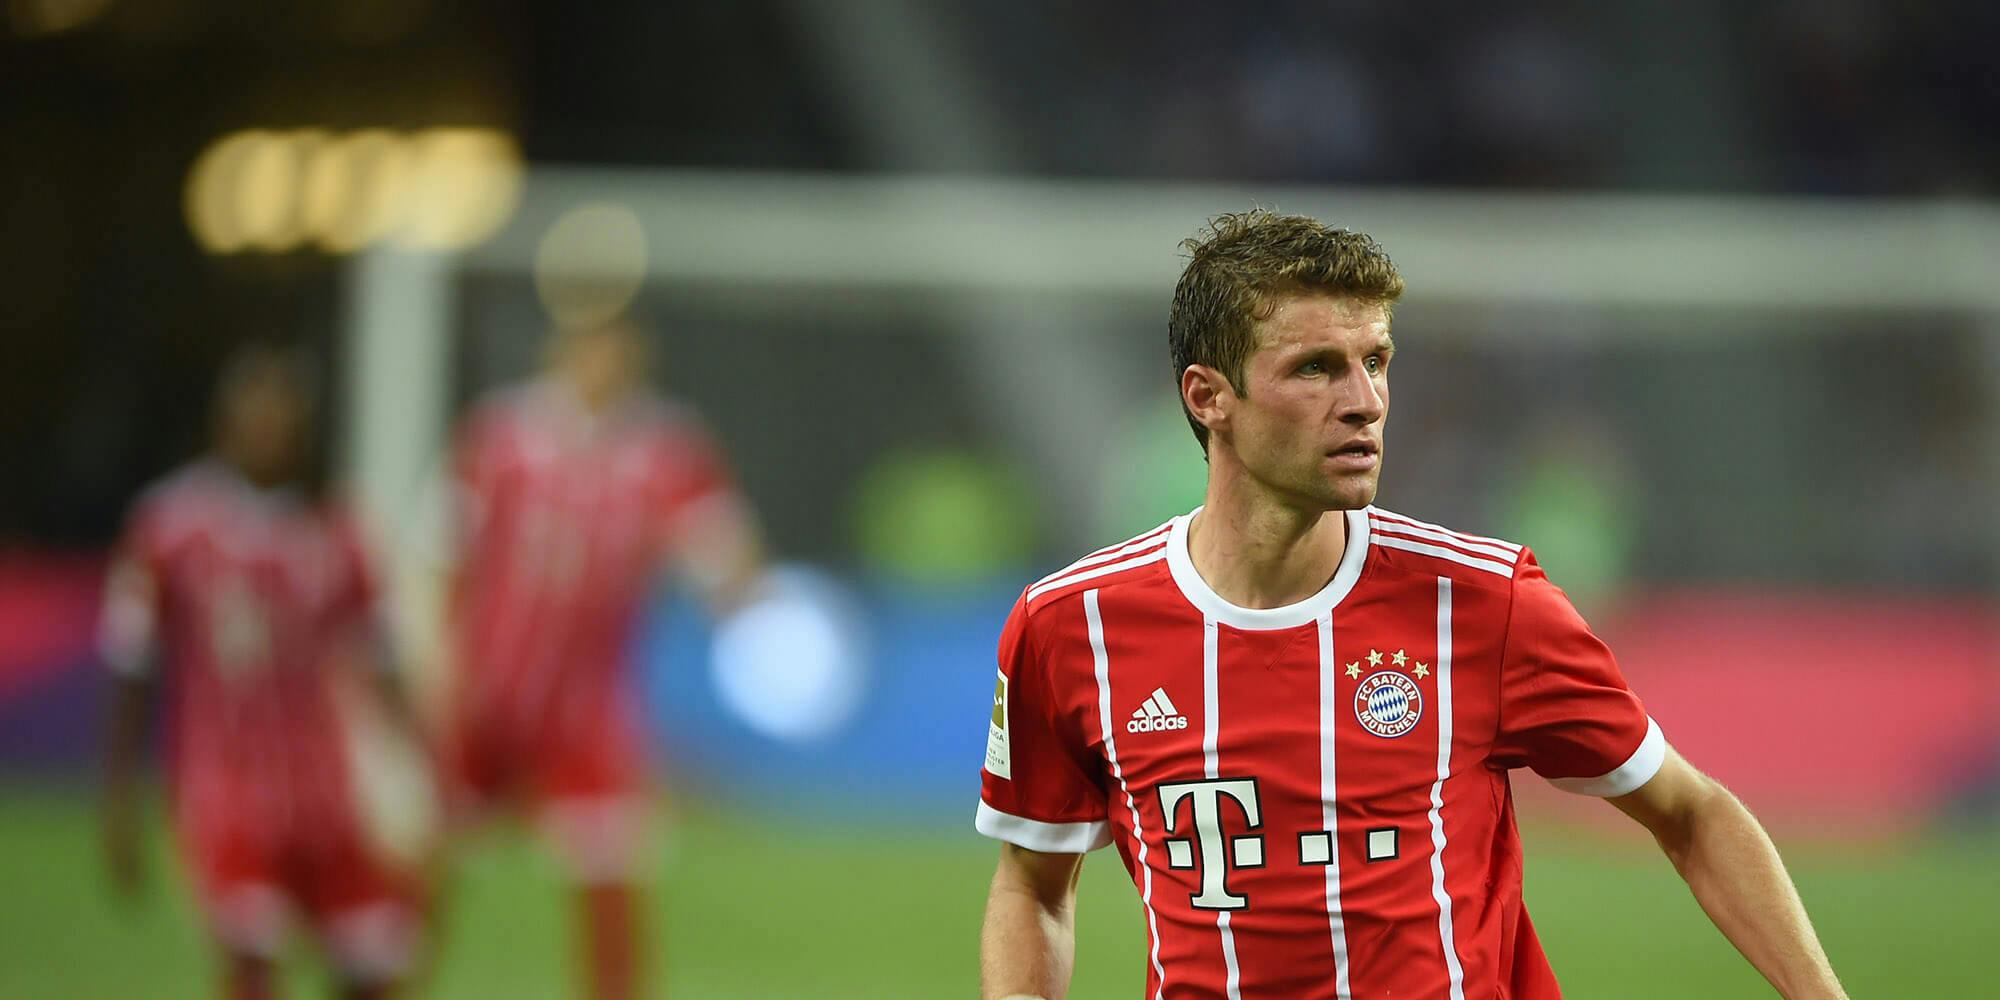 Thomas Muller of Bayern Munich